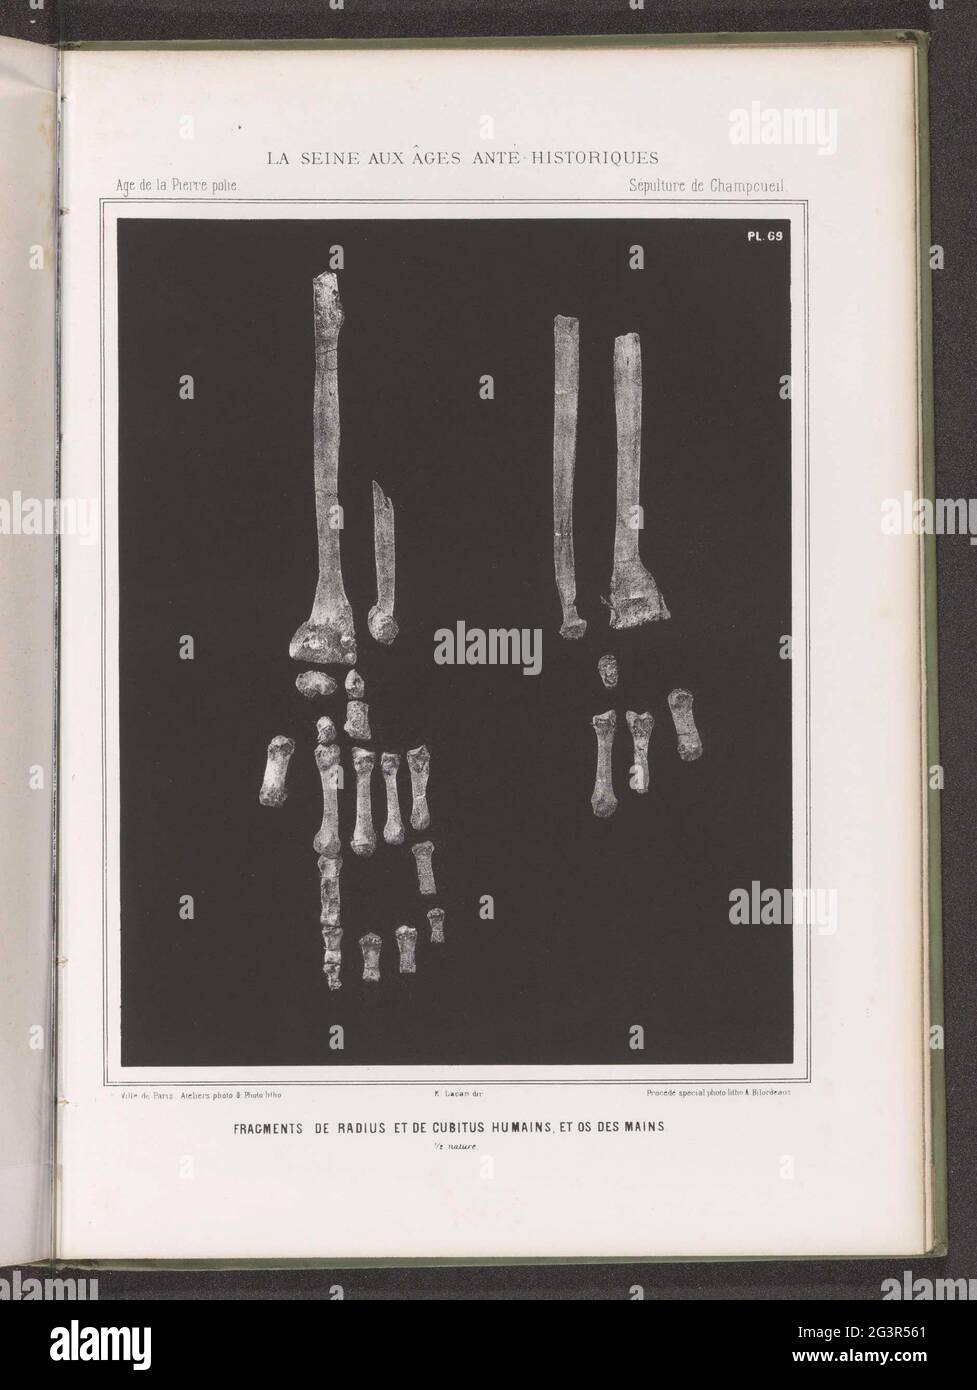 Frammenti dell'elevazione, della gamba del raggio e delle ossa dal braccio e dalla mano umani; frammenti di Radius et de Cubitus Humains, et os des Mains. 1/2 natura. . Foto Stock